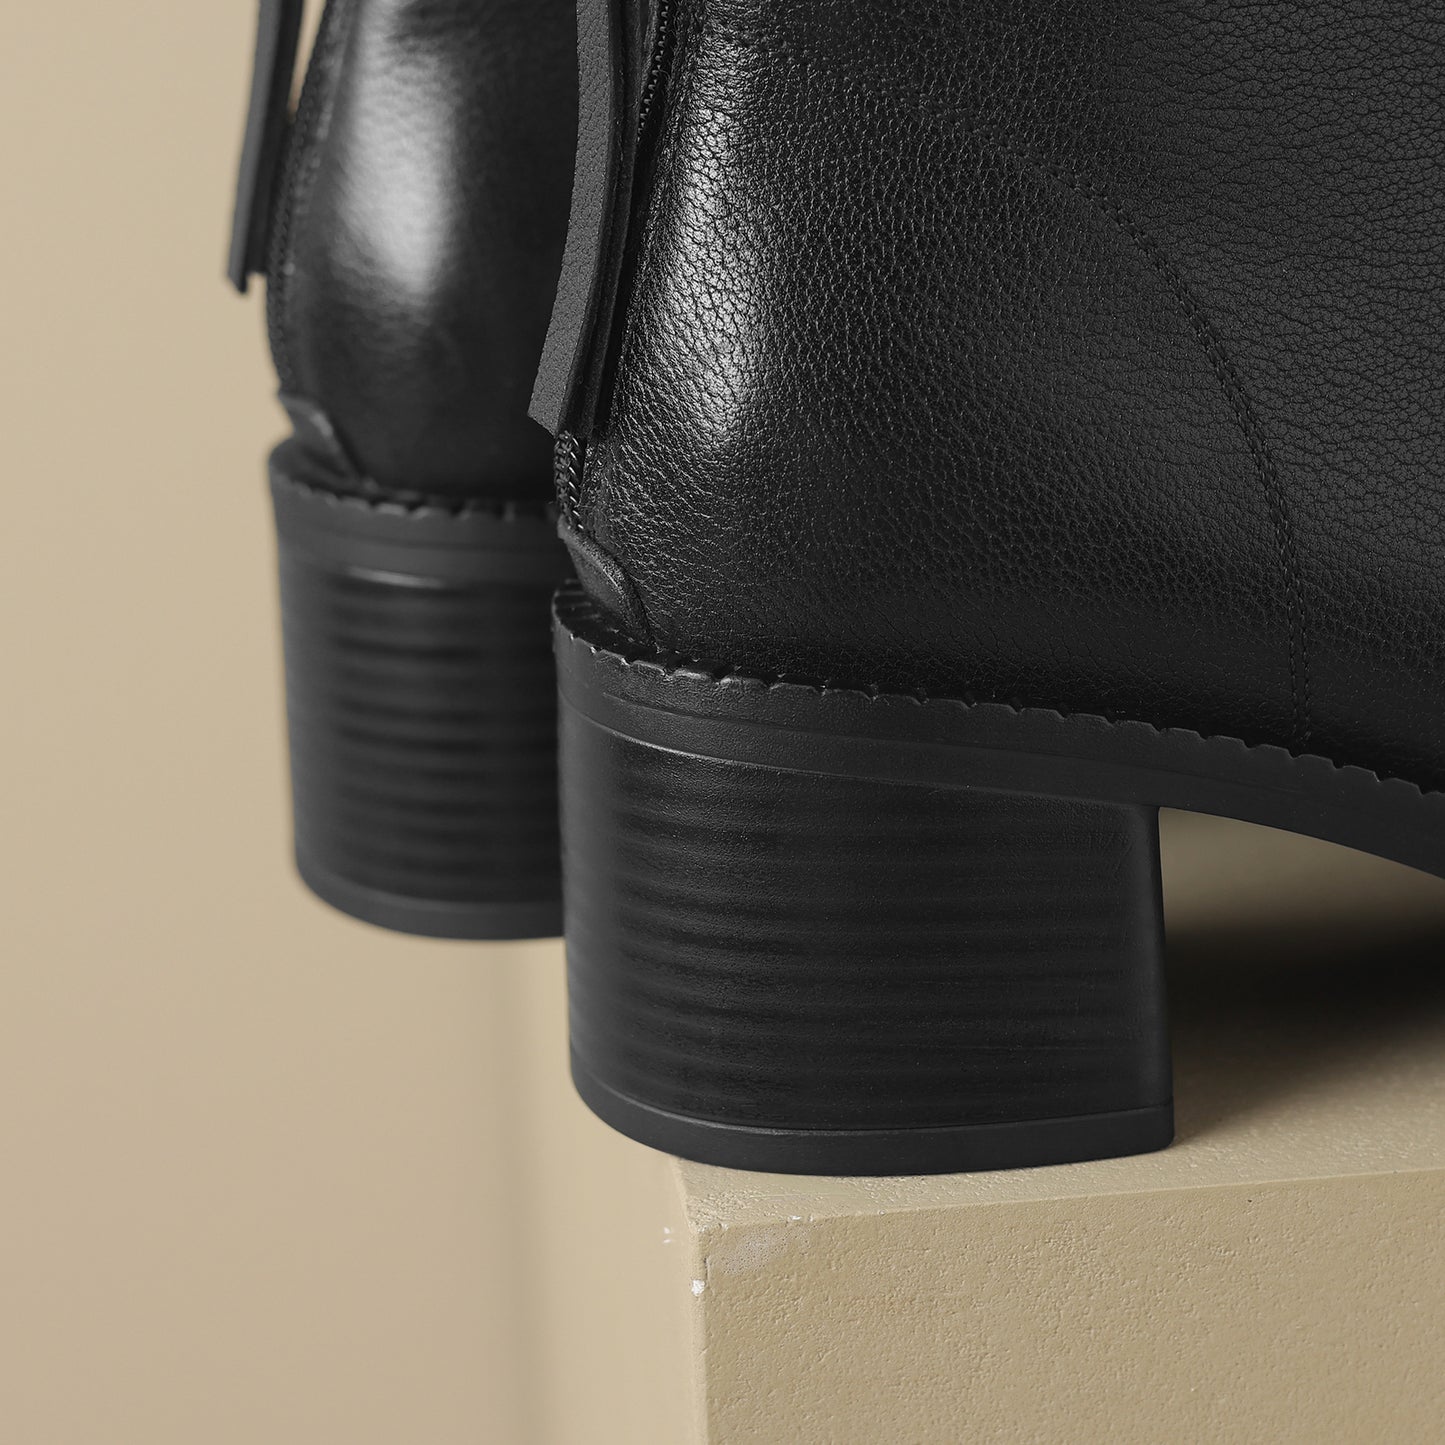 TinaCus Women's Genuine Leather Zip Up Block Heel Handmade Ankle Boots